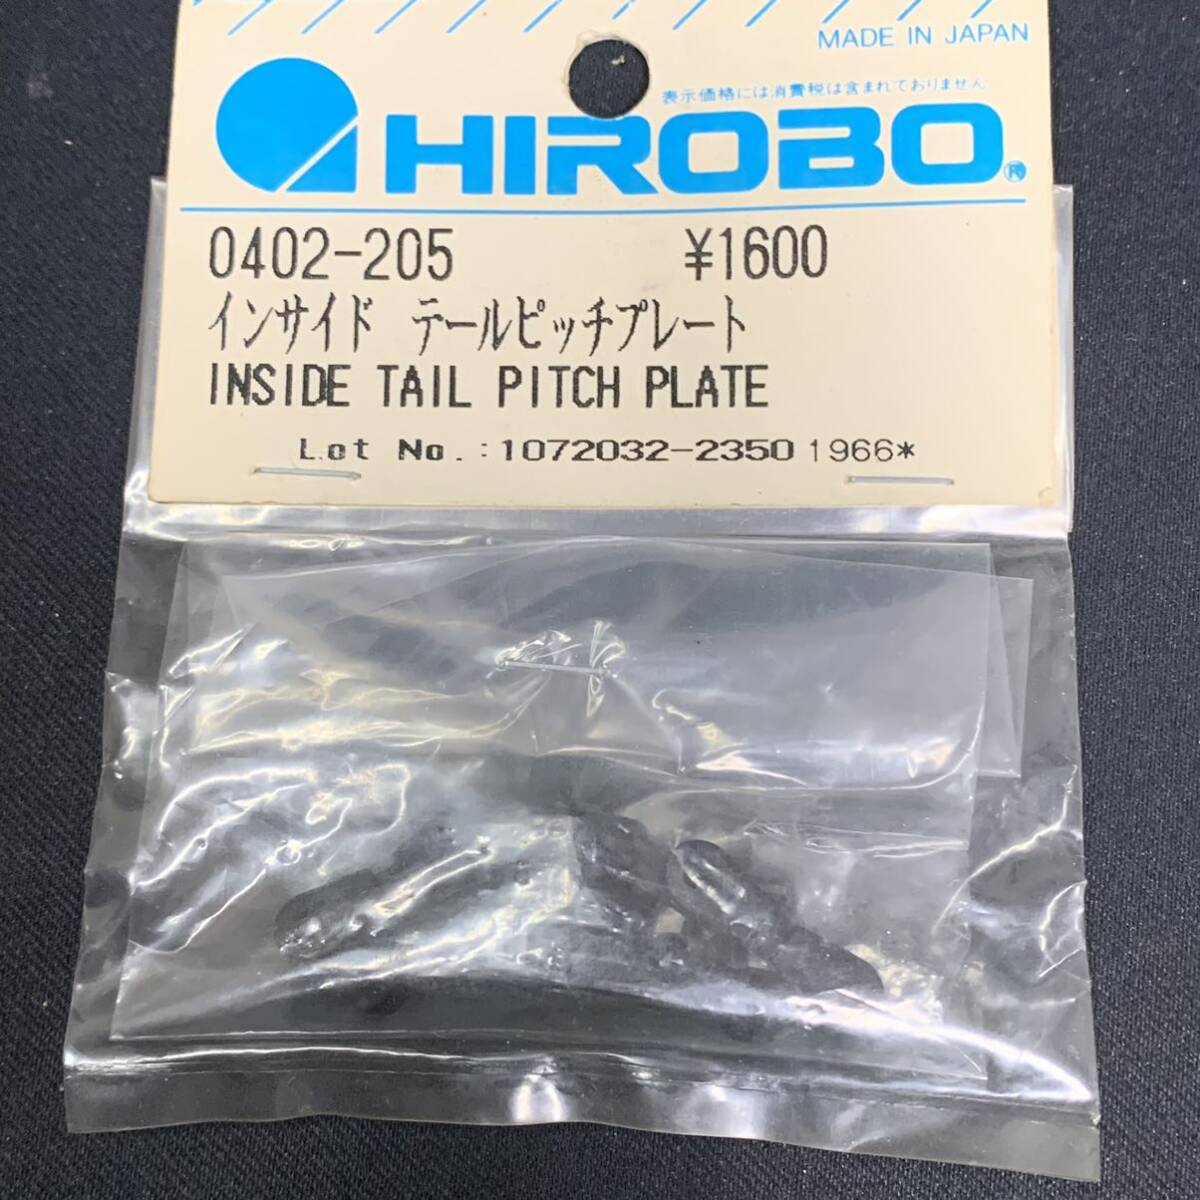 HIROBO ヒロボー 0402-205 インサイド テールピッチプレート ラジコンヘリコプター パーツ 希少 当時物の画像1